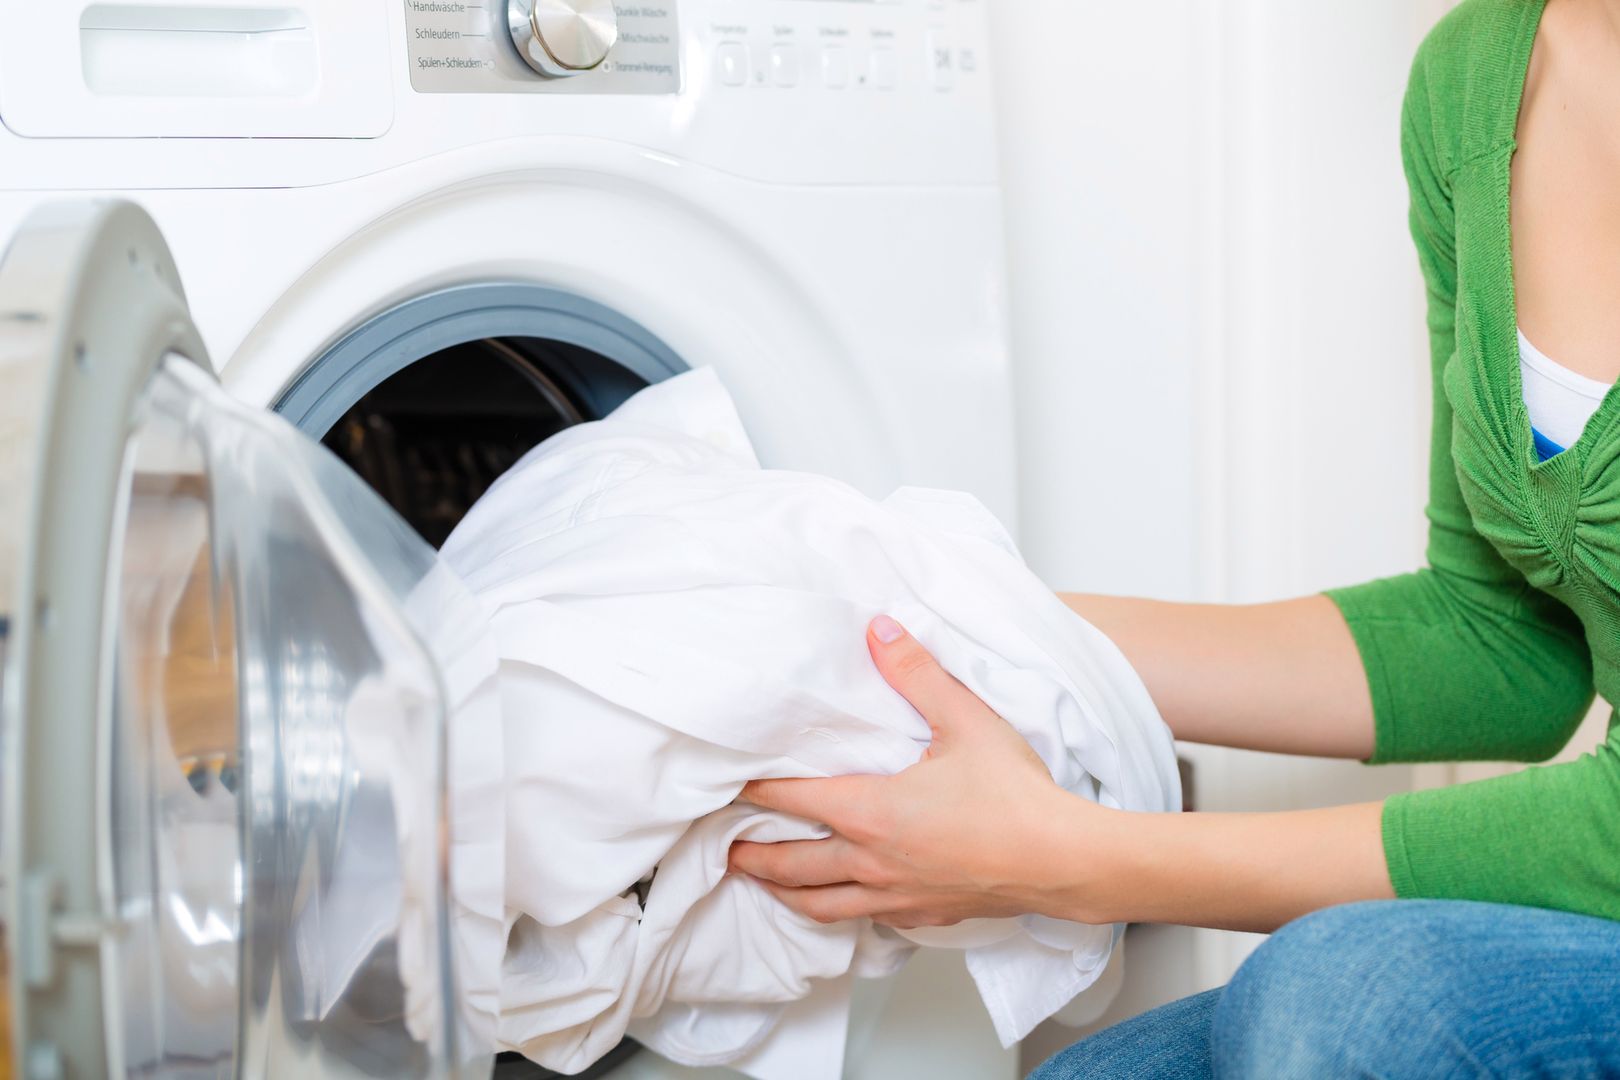 Suszysz pranie w domu? To błąd